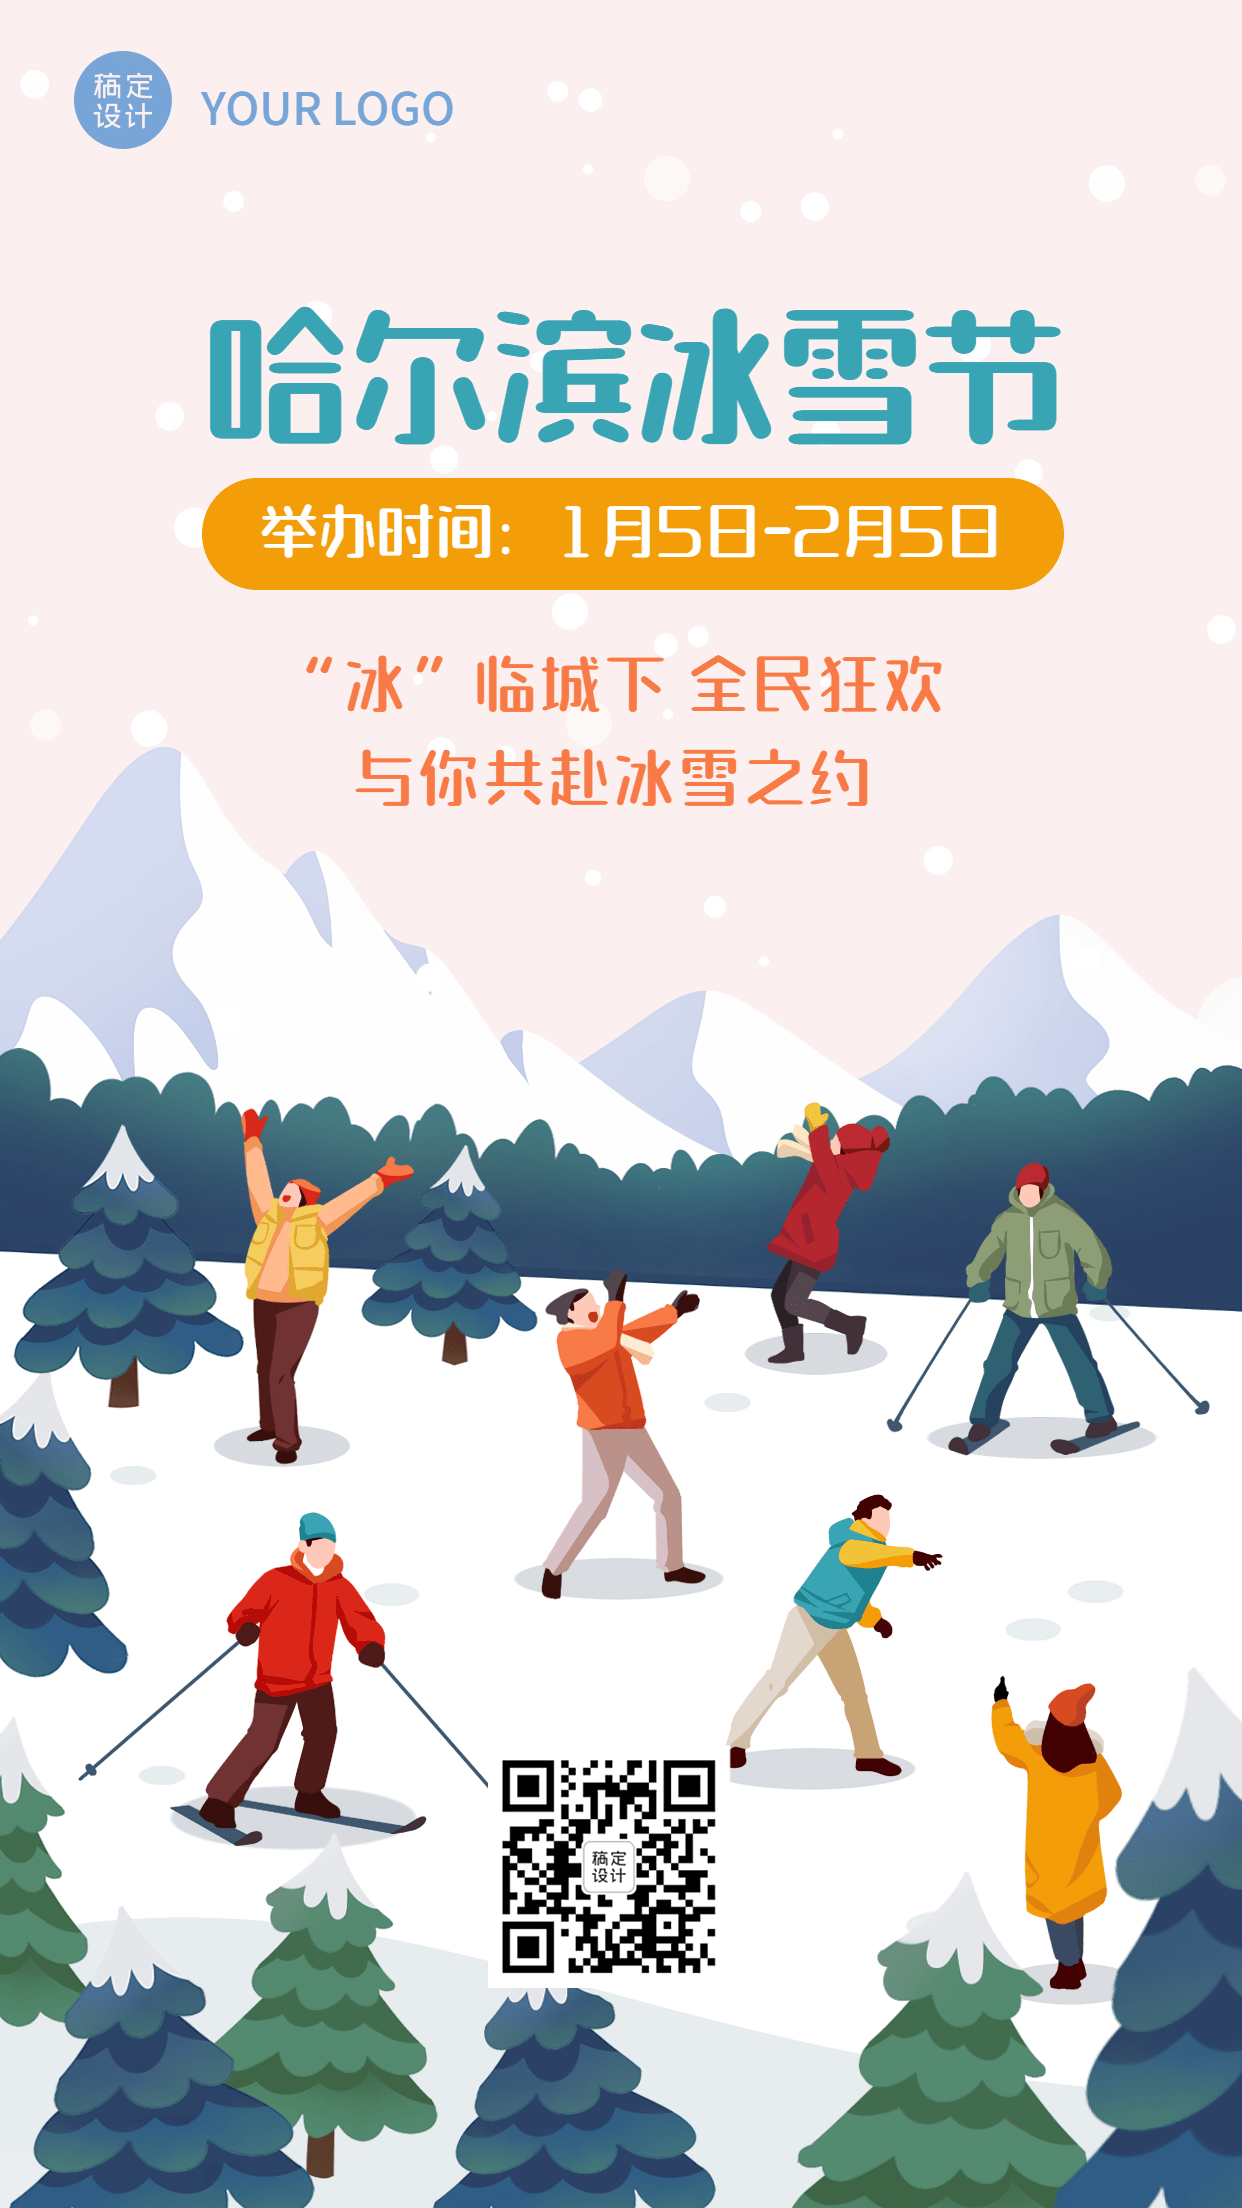 冬季哈尔滨国际冰雪节活动宣传手绘海报